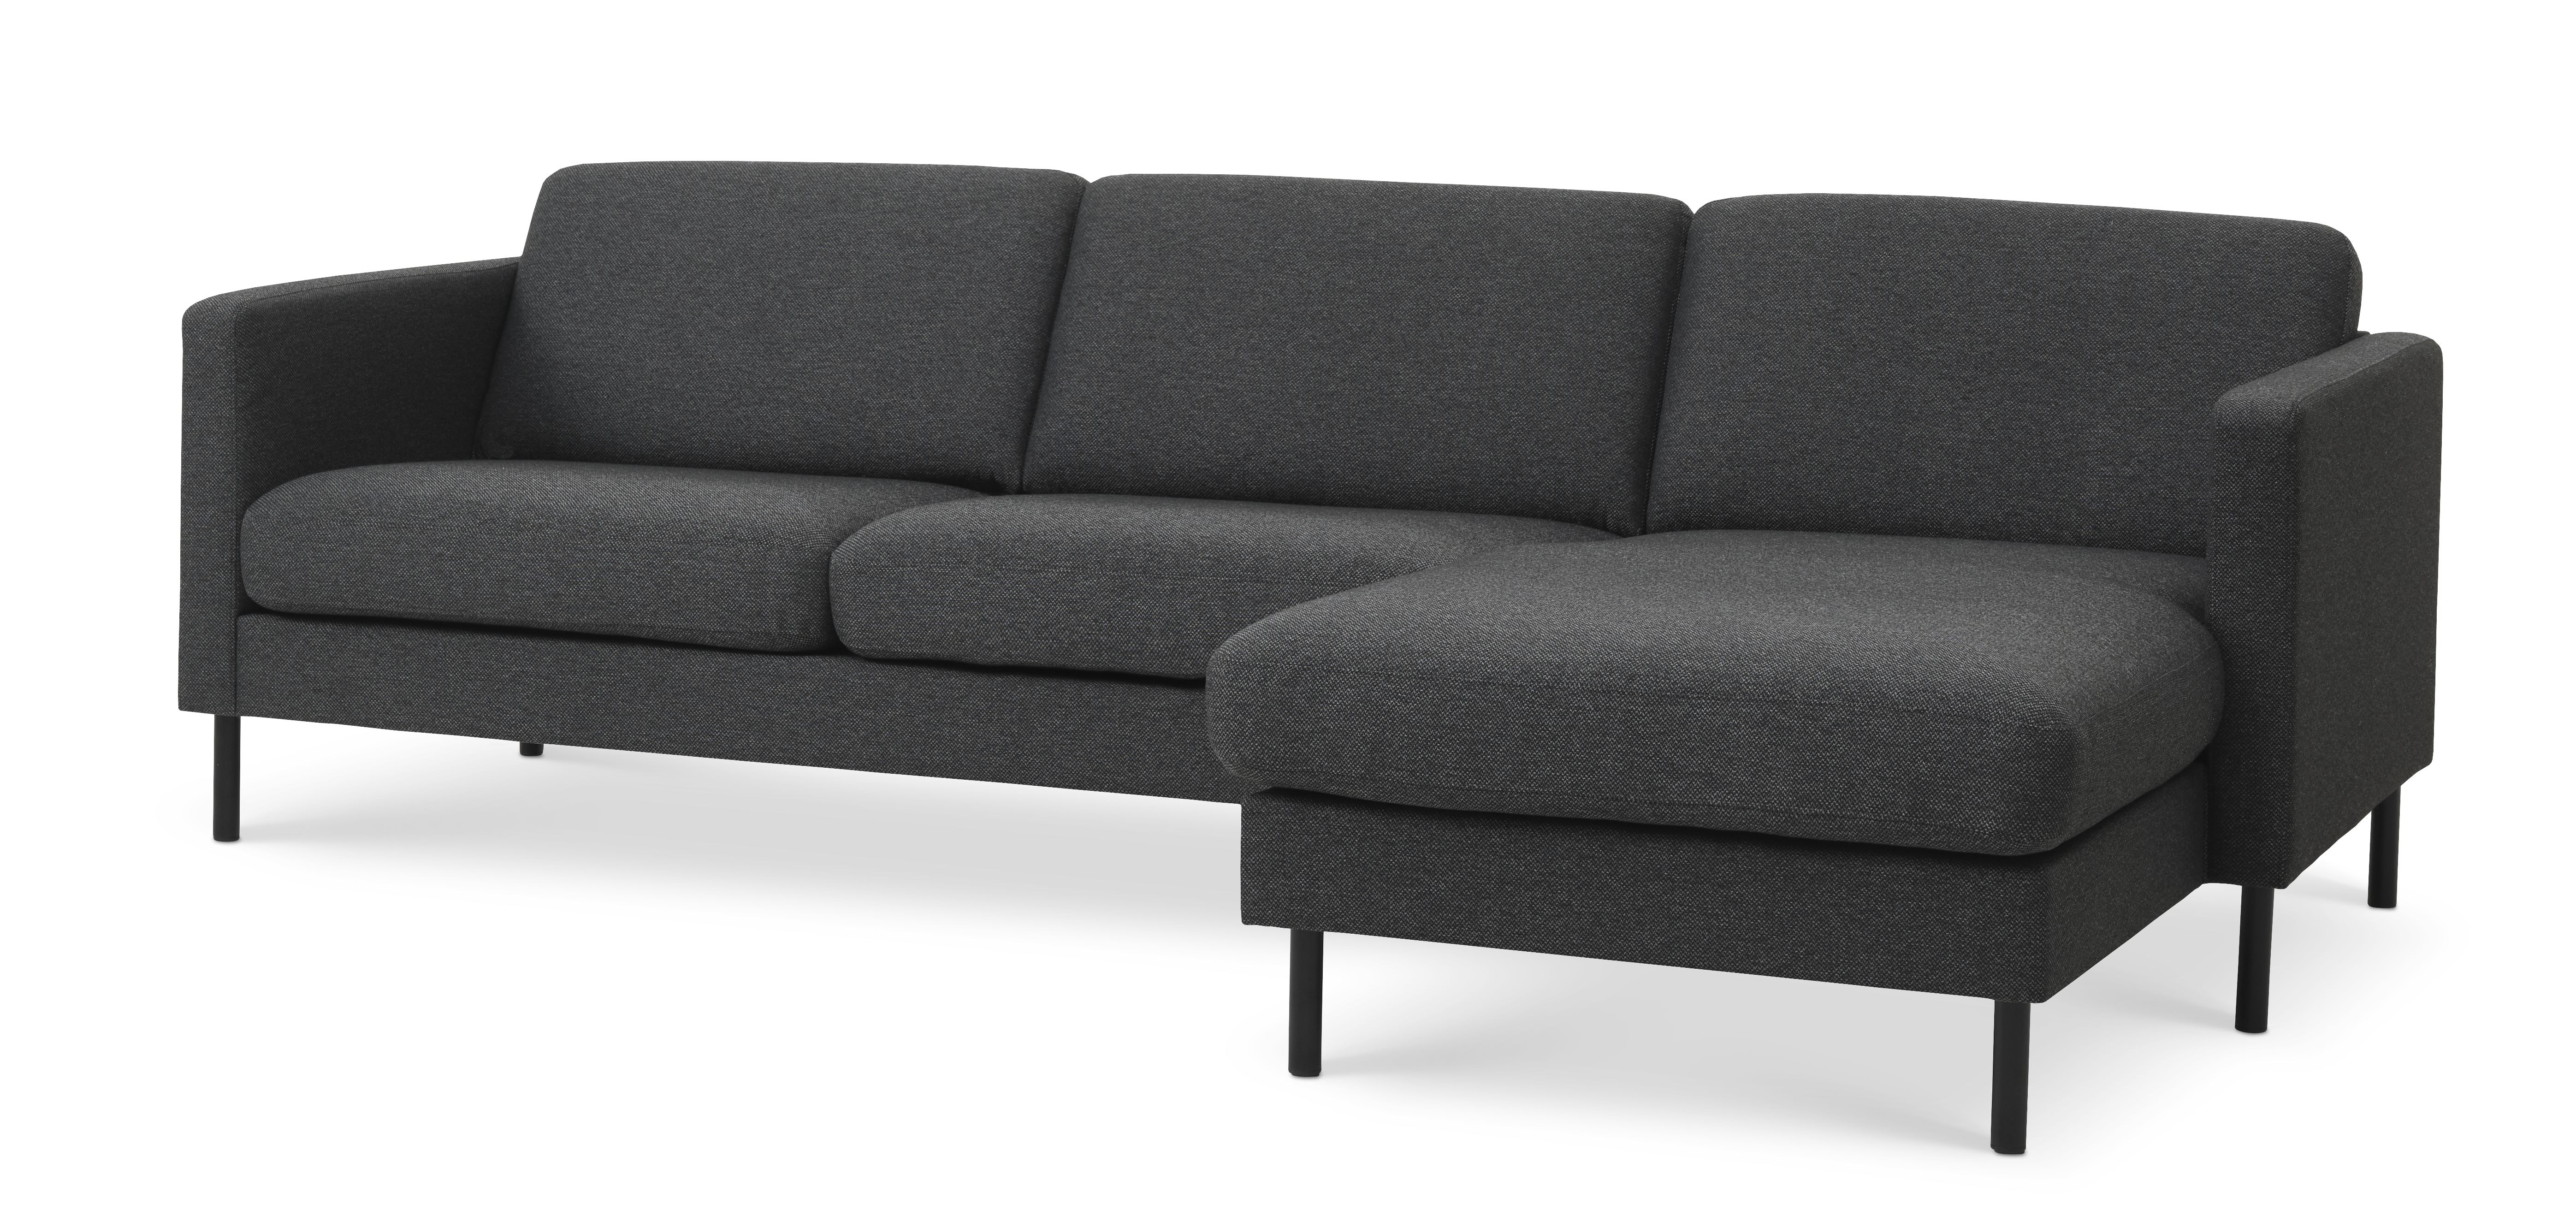 Ask sæt 51 3D sofa, m. chaiselong - antracitgrå polyester stof og sort metal